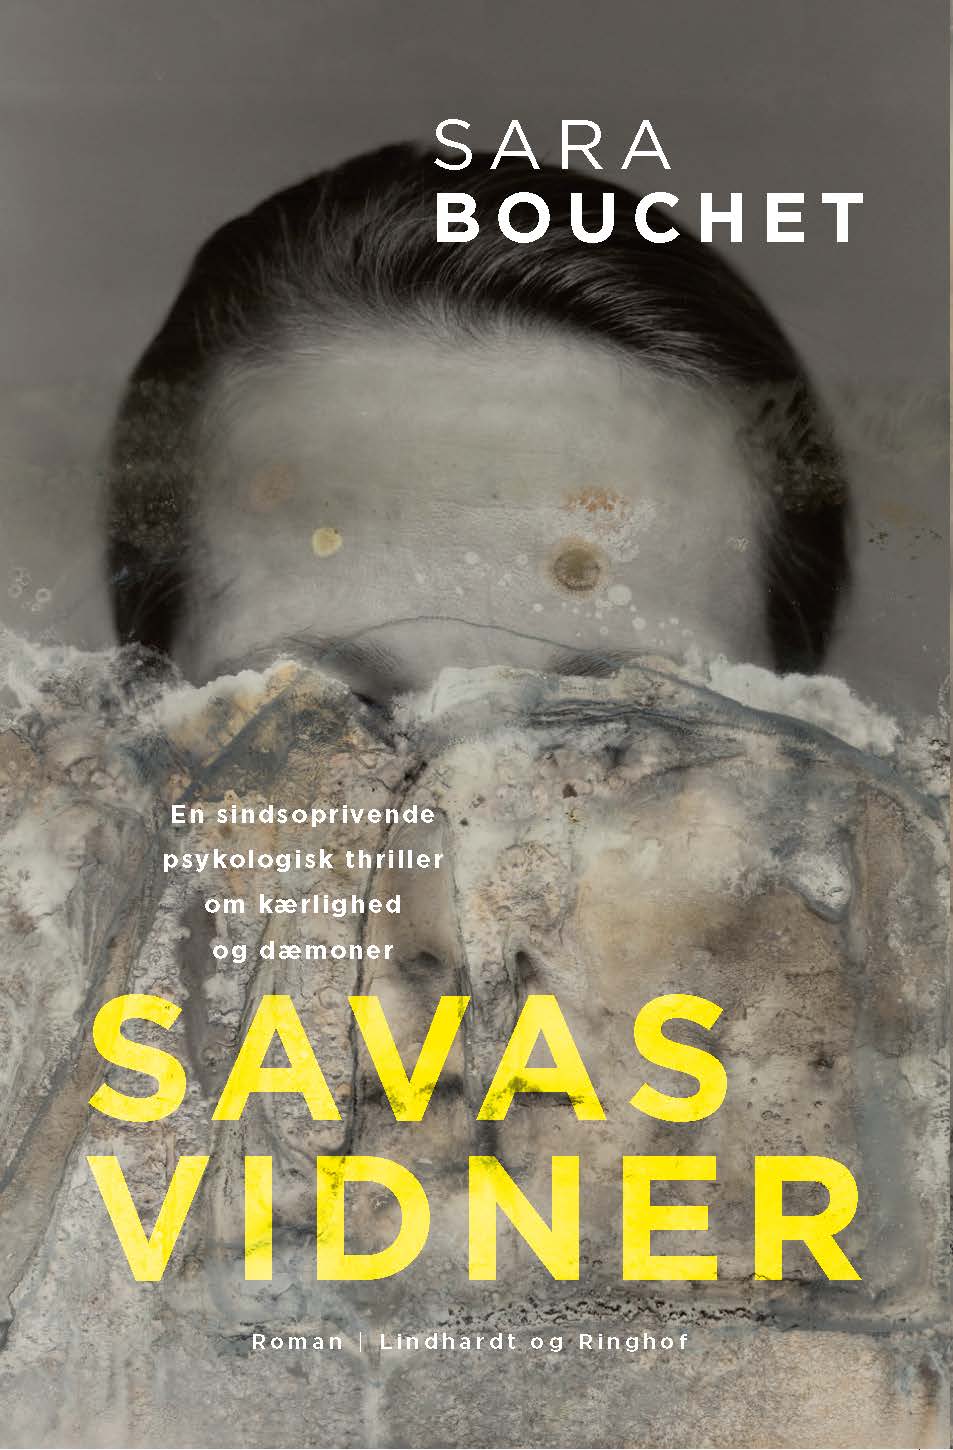 Savas vidner, Sara Bouchet, psykologisk thriller